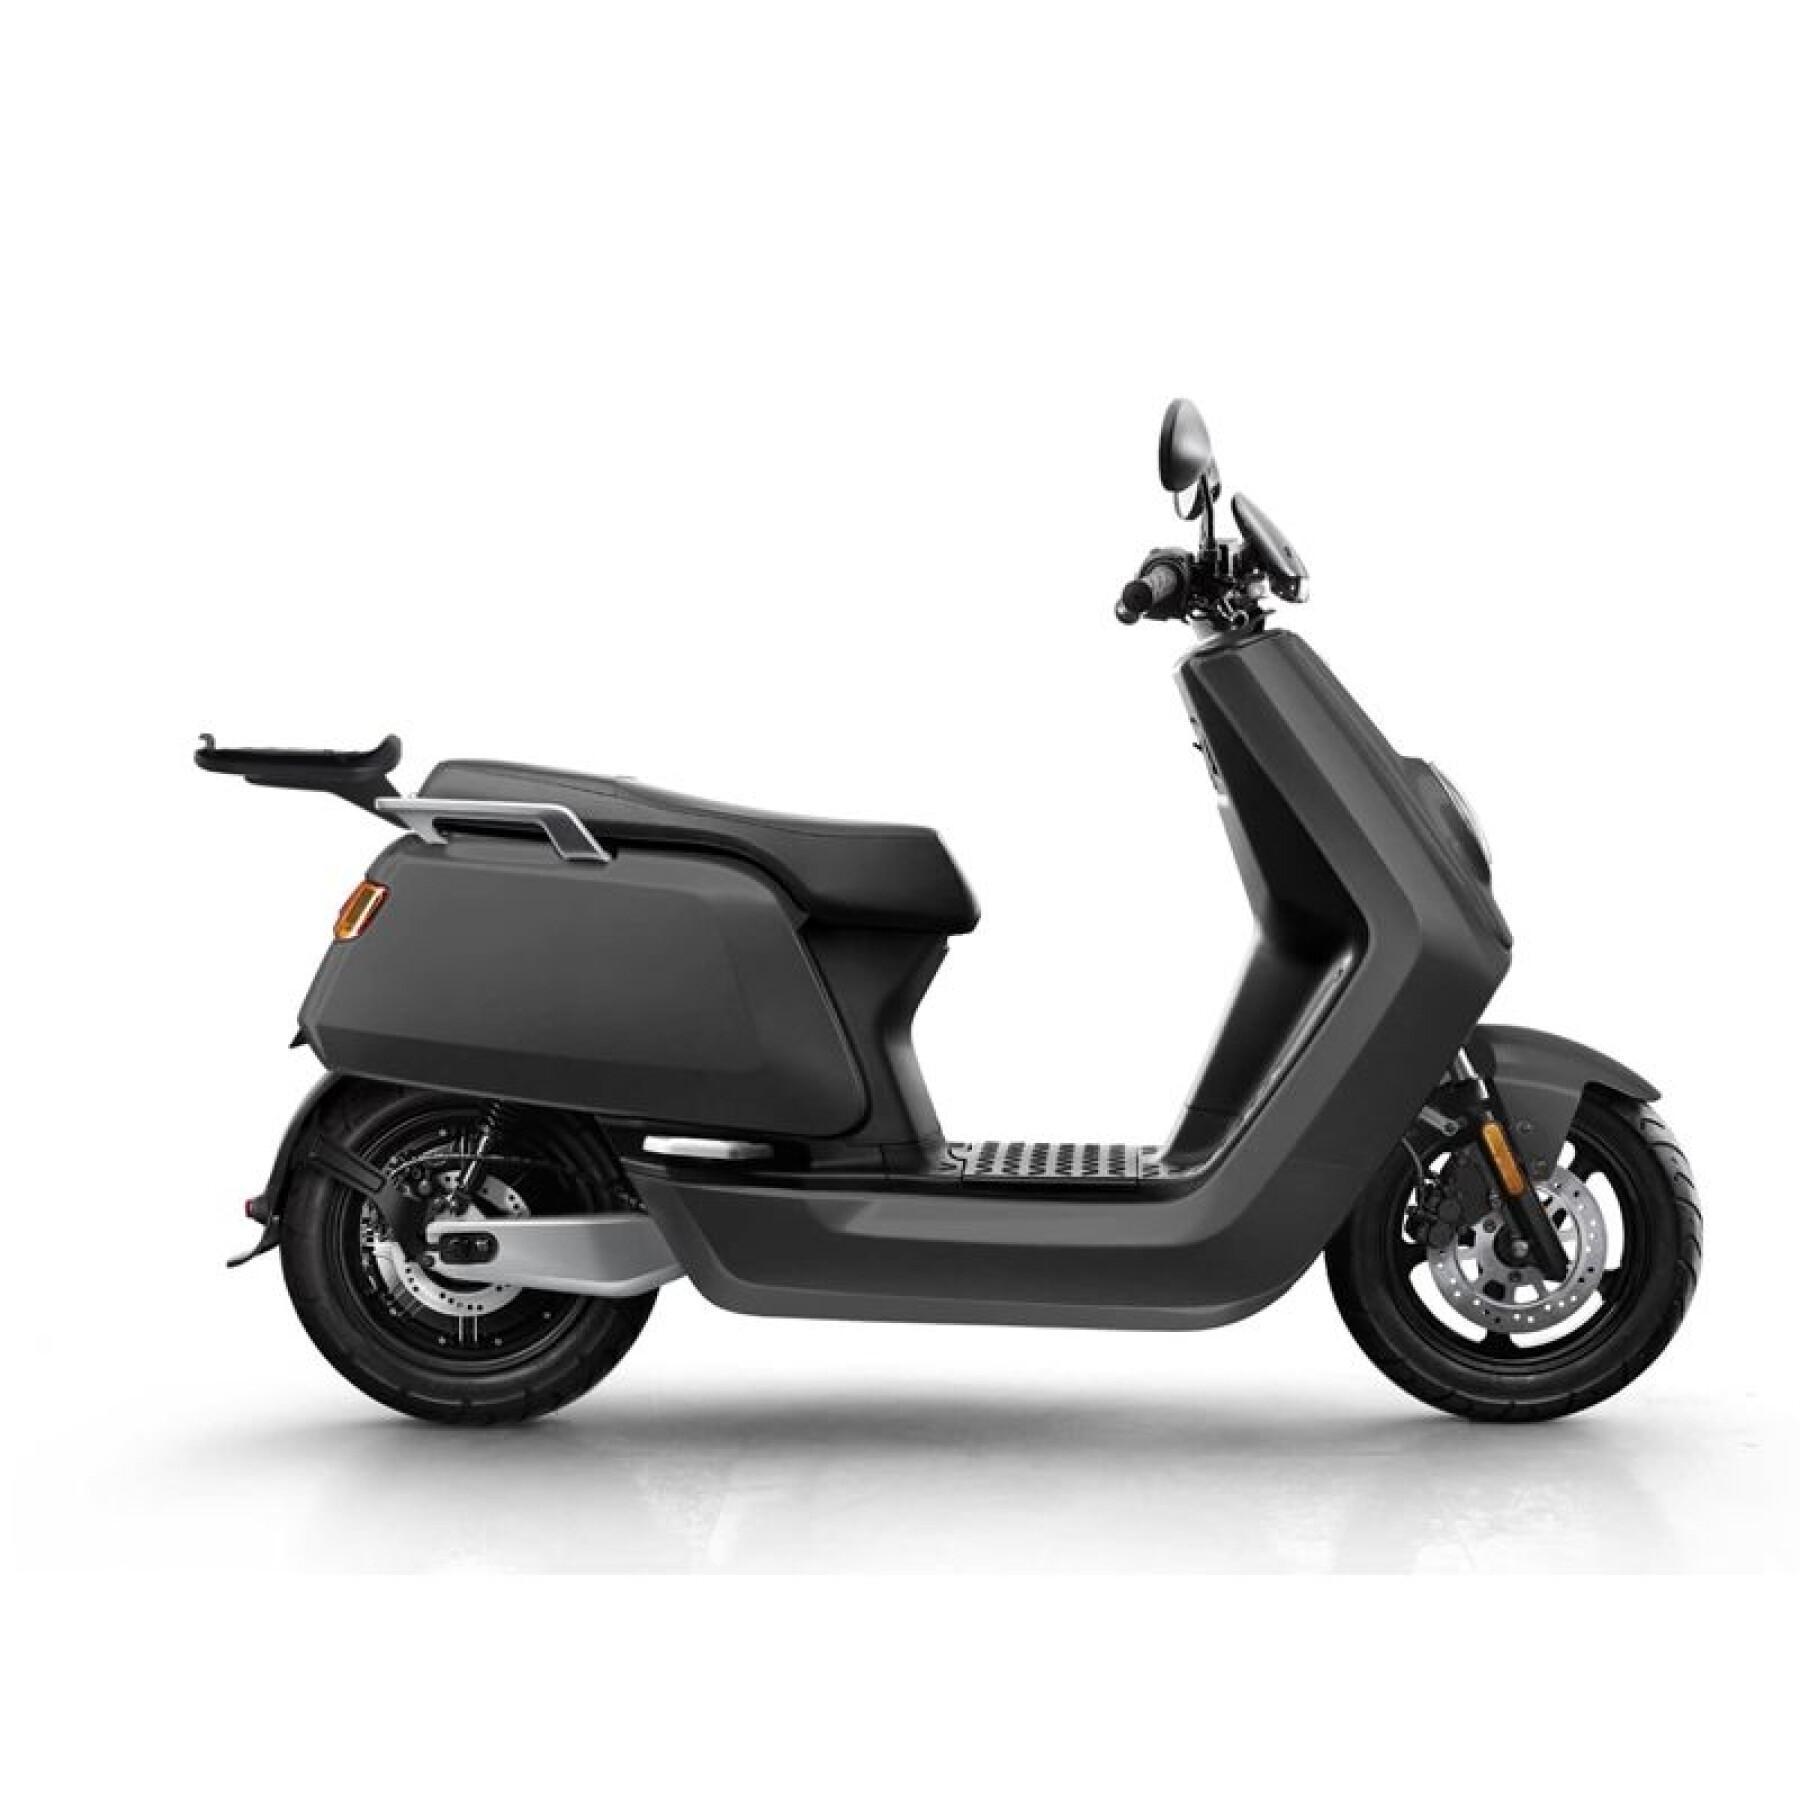 Bauletto per moto Shad Niu N Series Electrica (18-21)